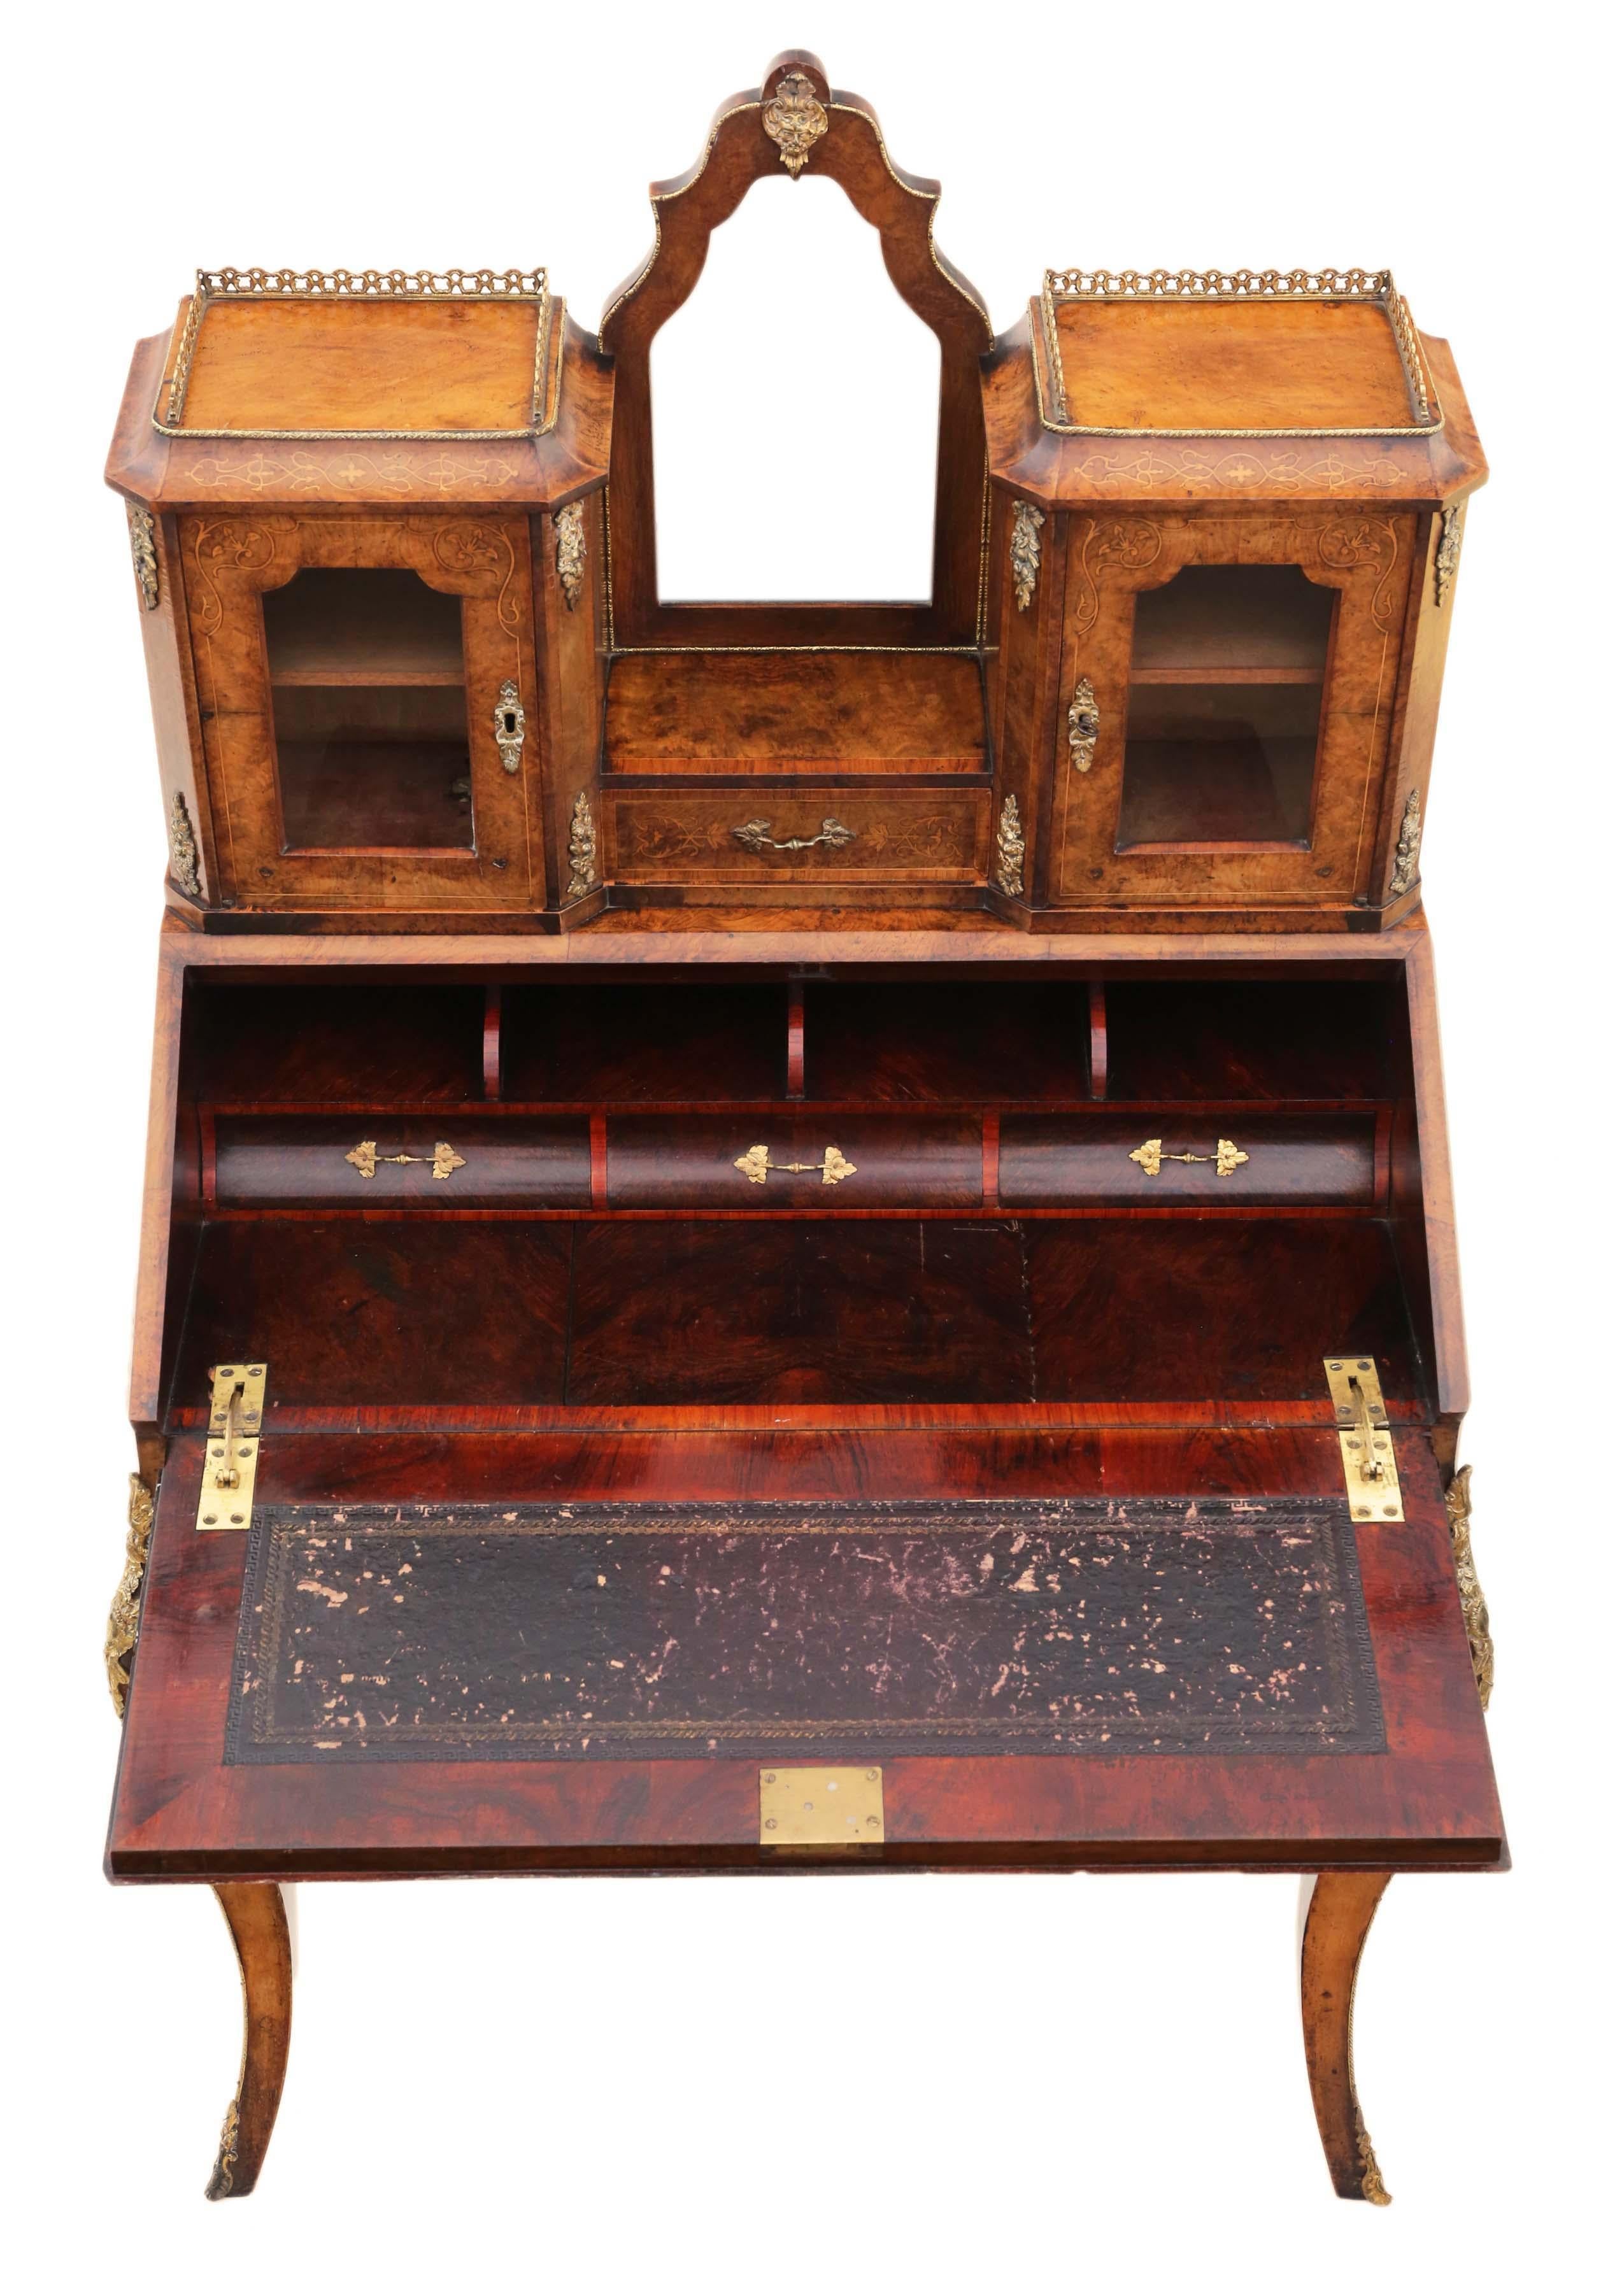 Antique Fine Quality Inlaid Burr Walnut Bonheur De Jour Desk Writing Table For Sale 1